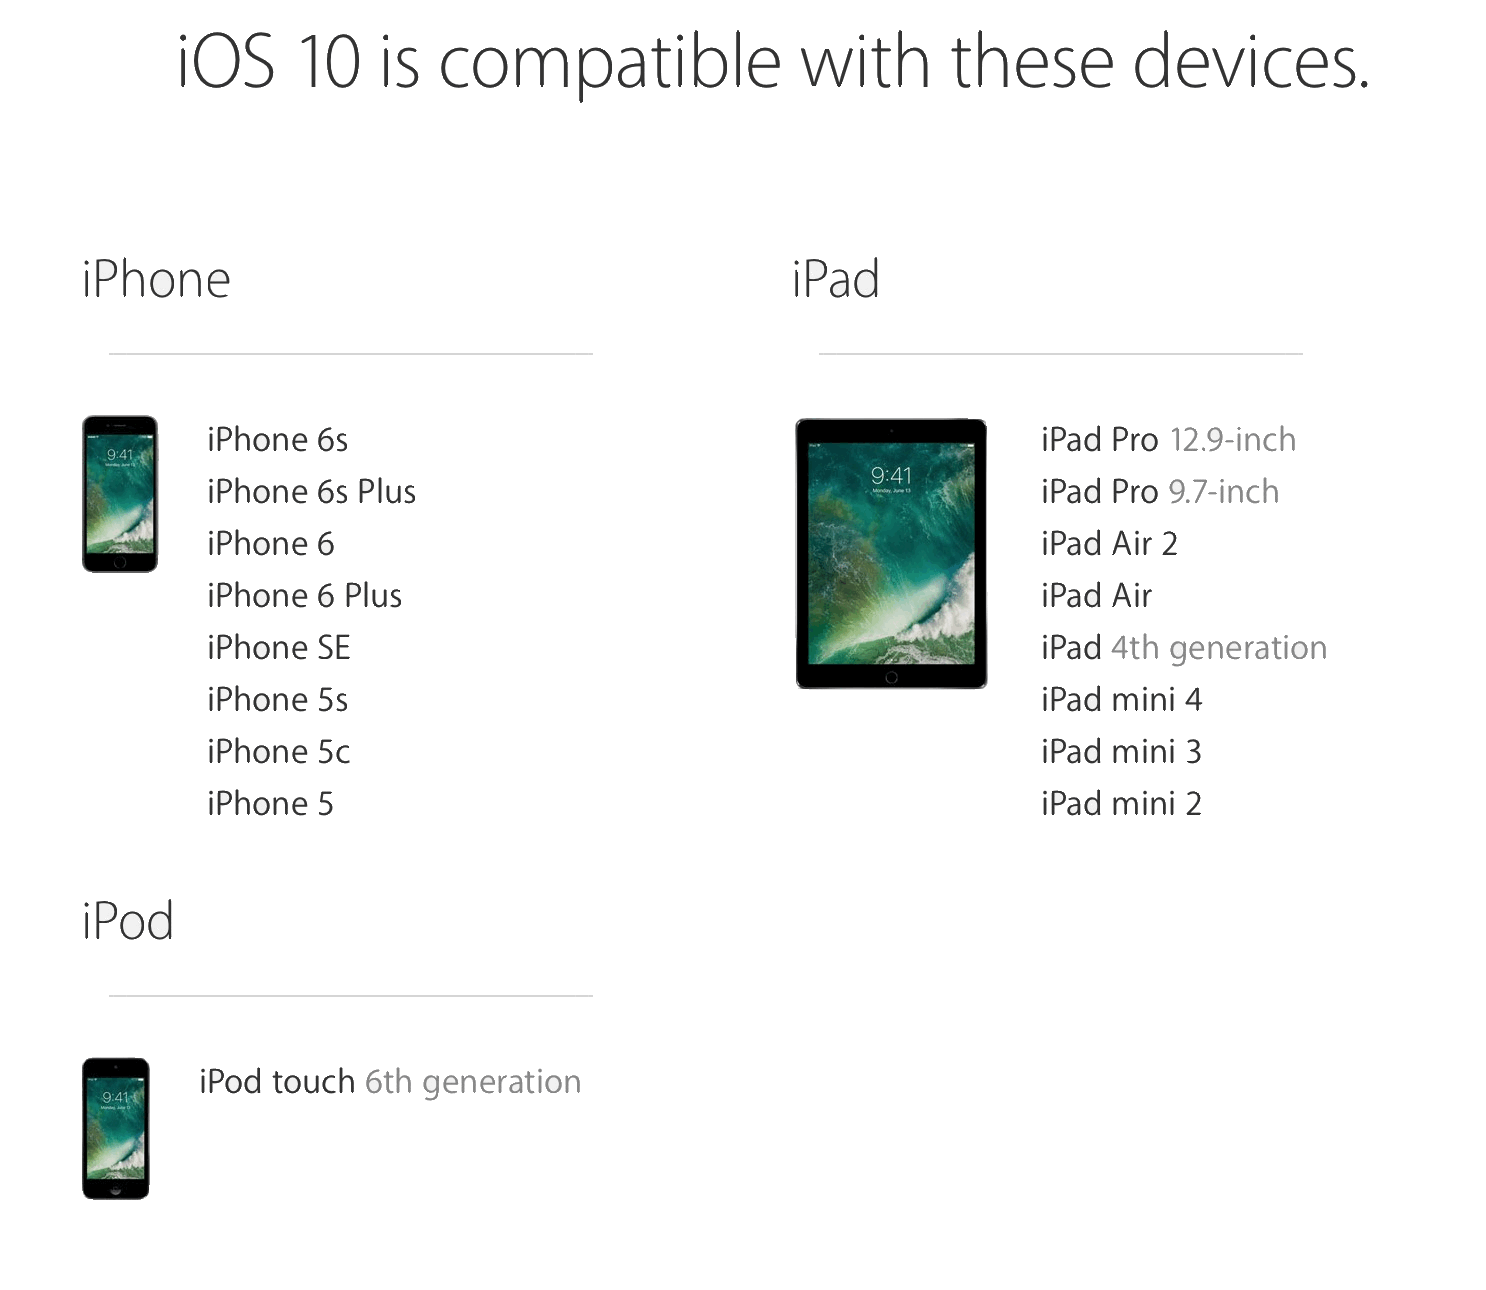 Elenco di compatibilità del dispositivo iOS 10